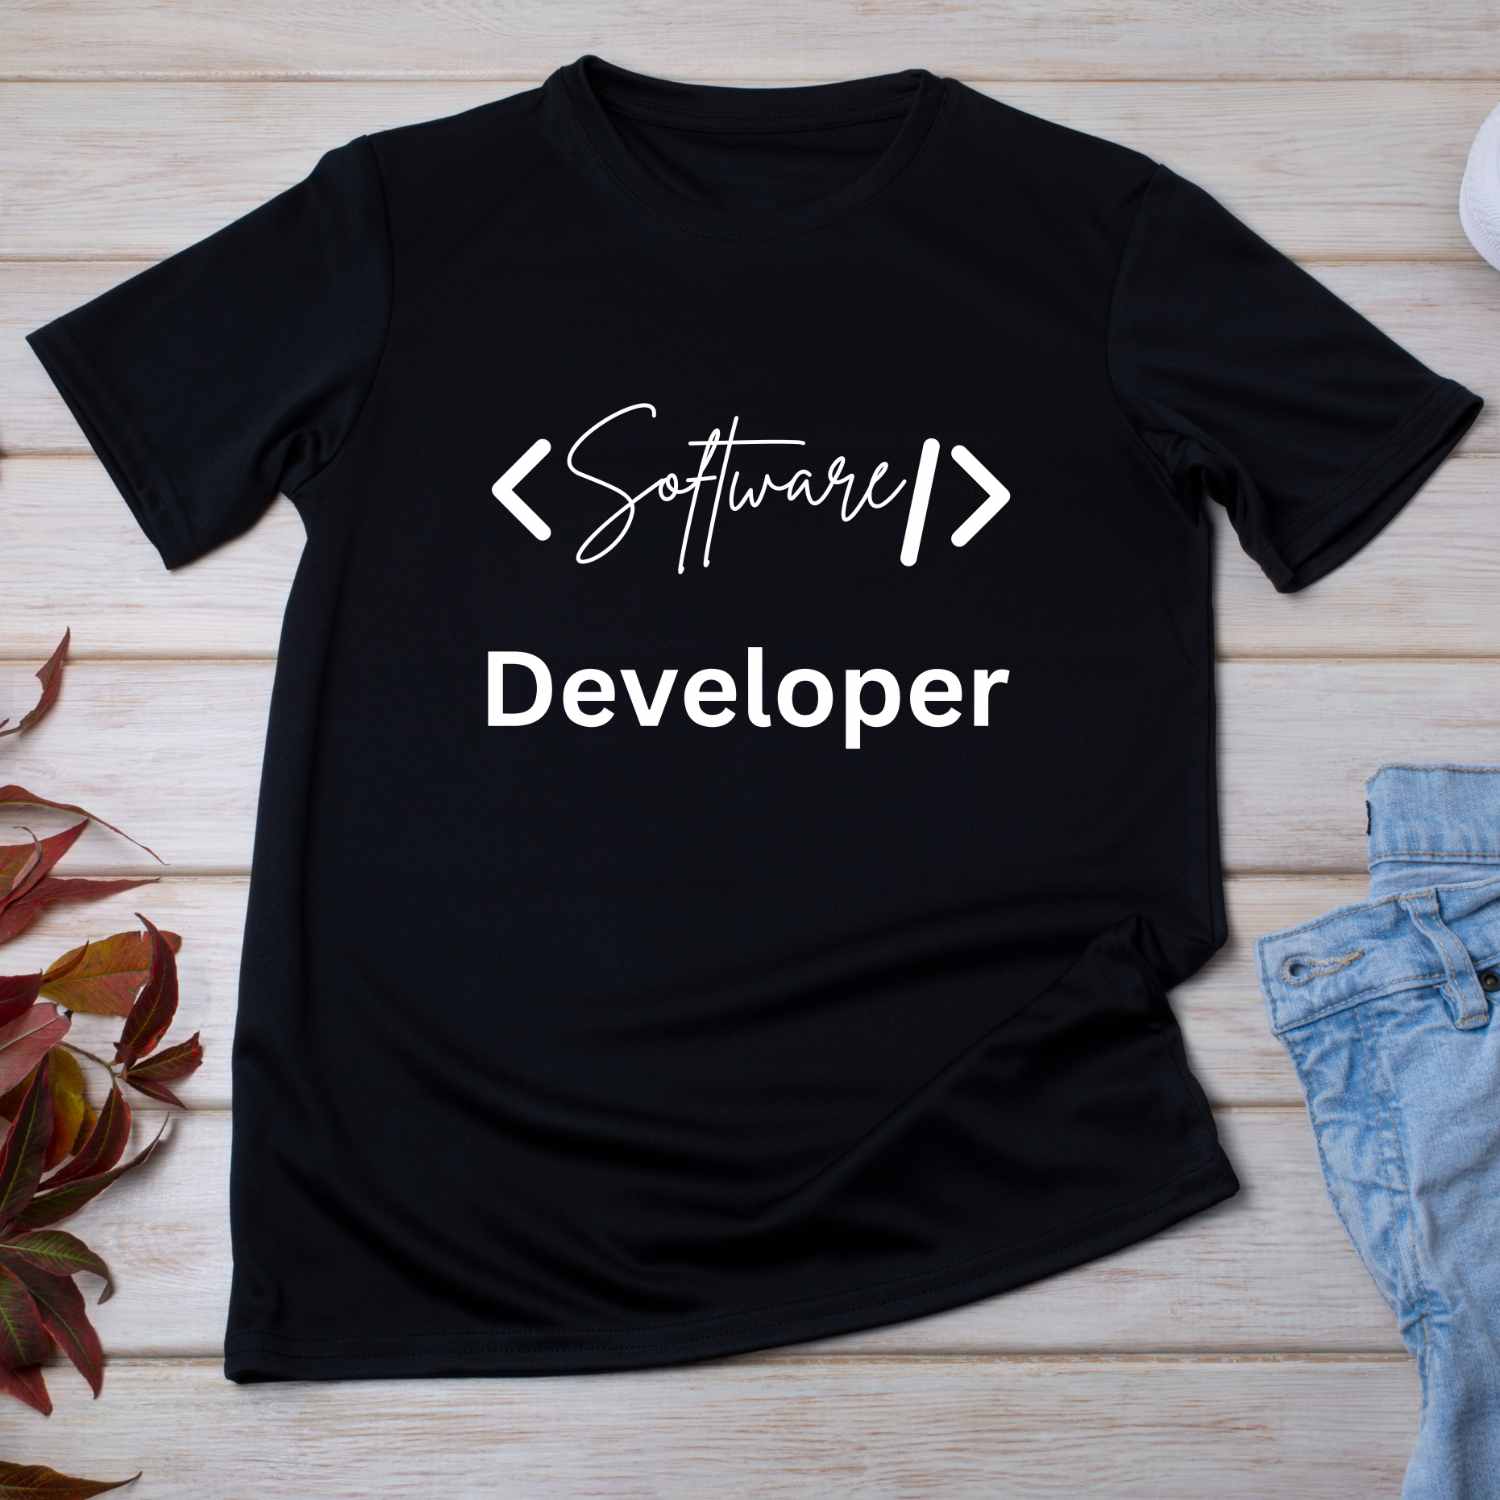 Software Developer T-shirt Design